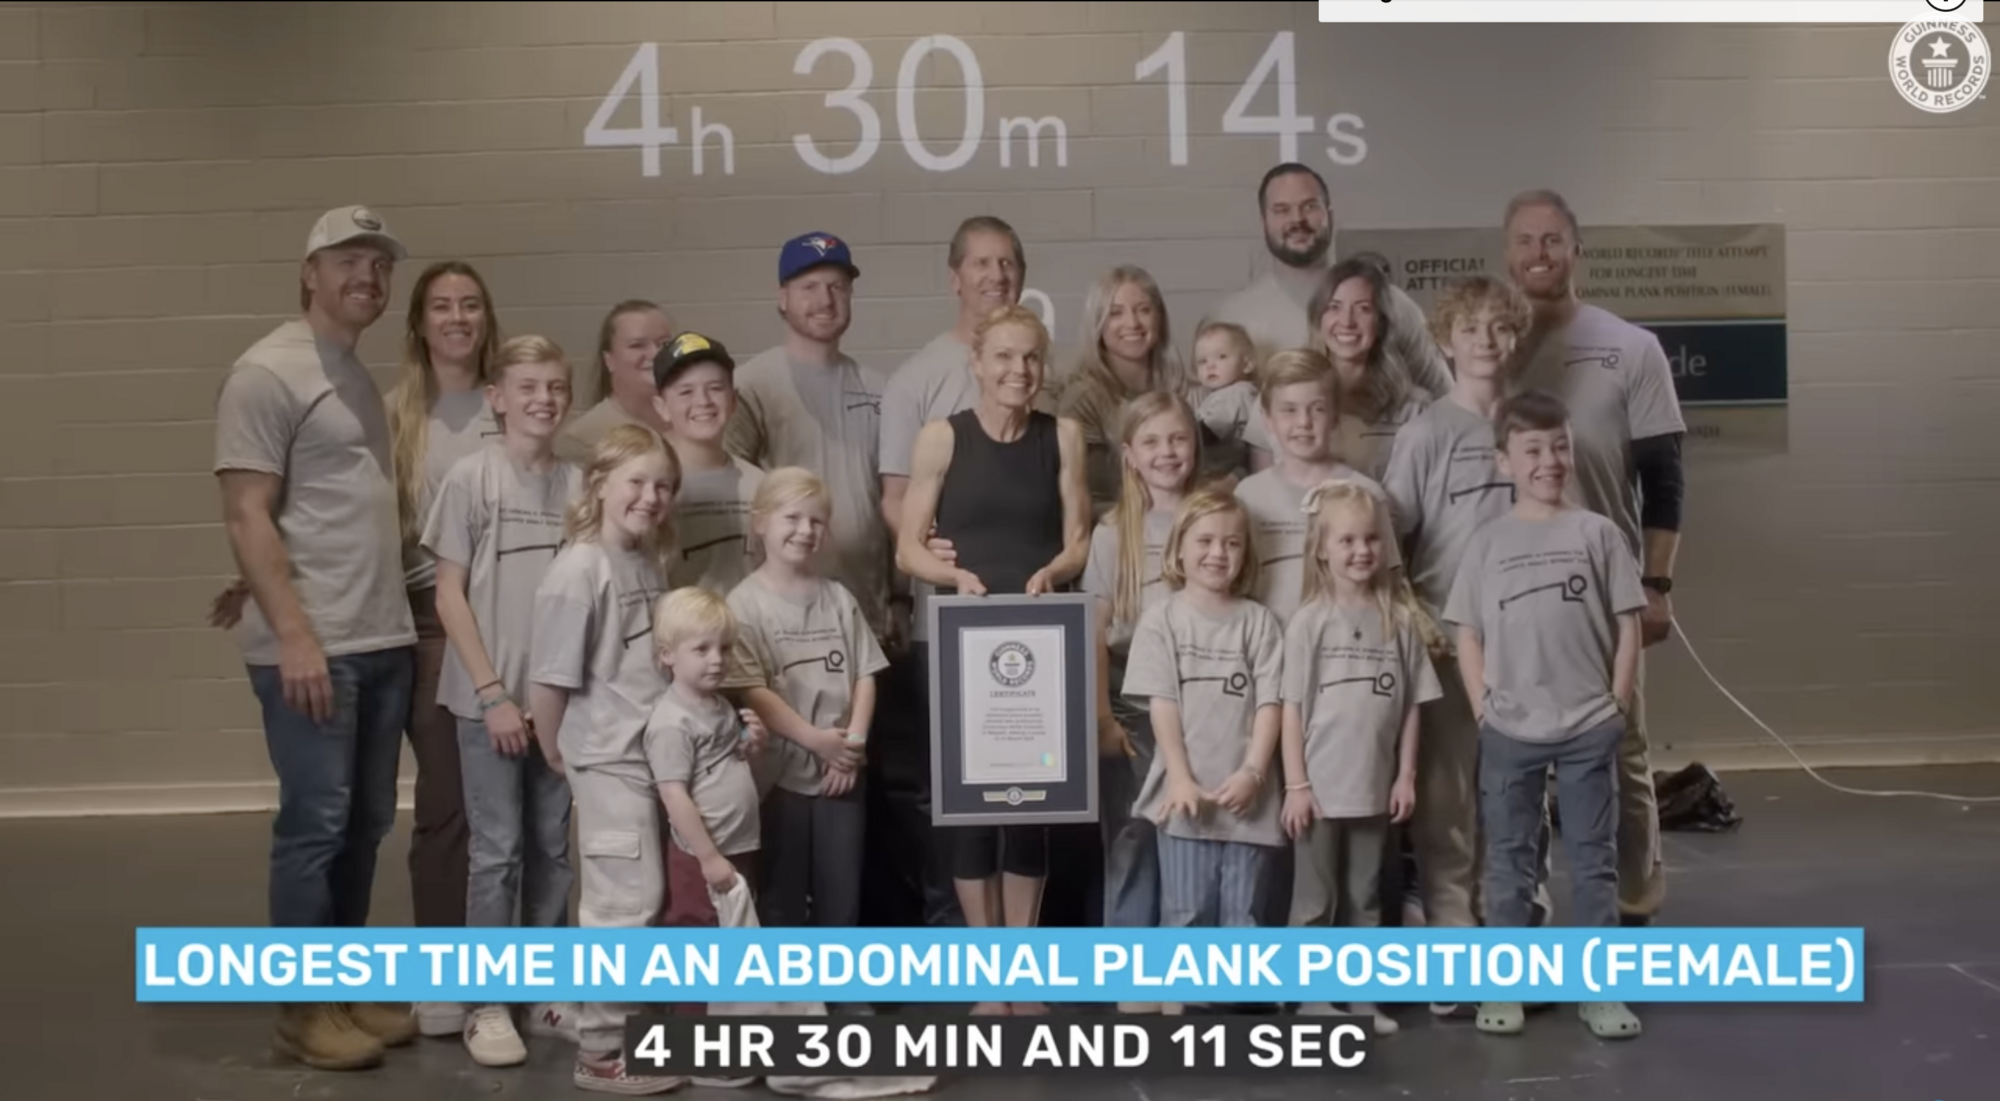 58-річна вчителька з Канади простояла у планці понад 4 години і побила світовий рекорд. Фото і відео